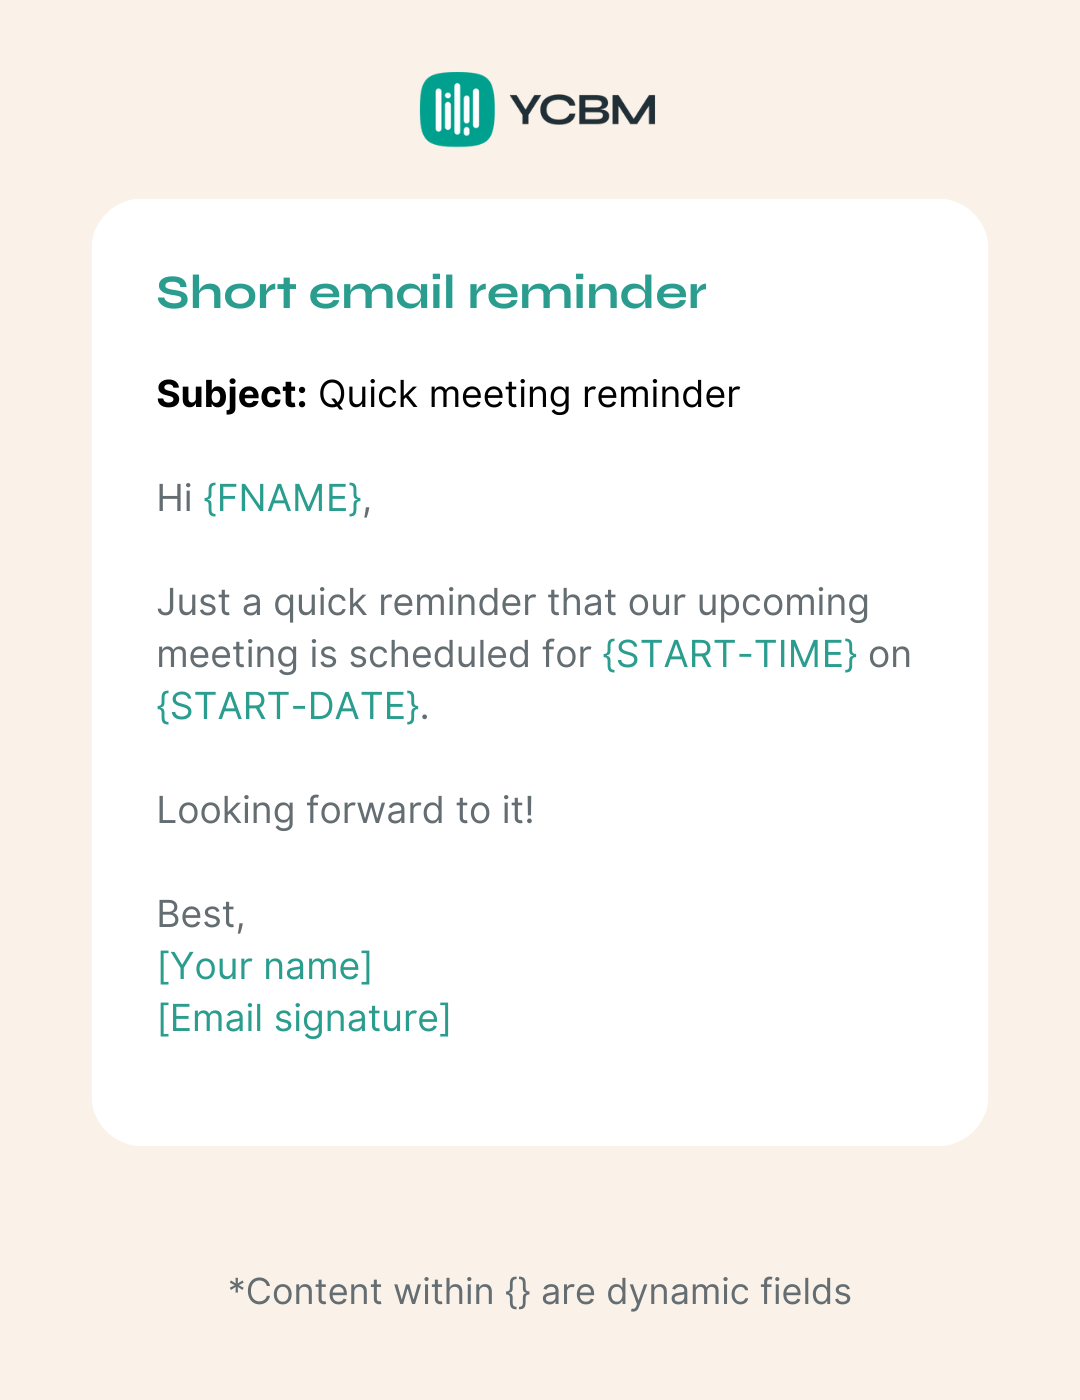 Short meeting email reminder